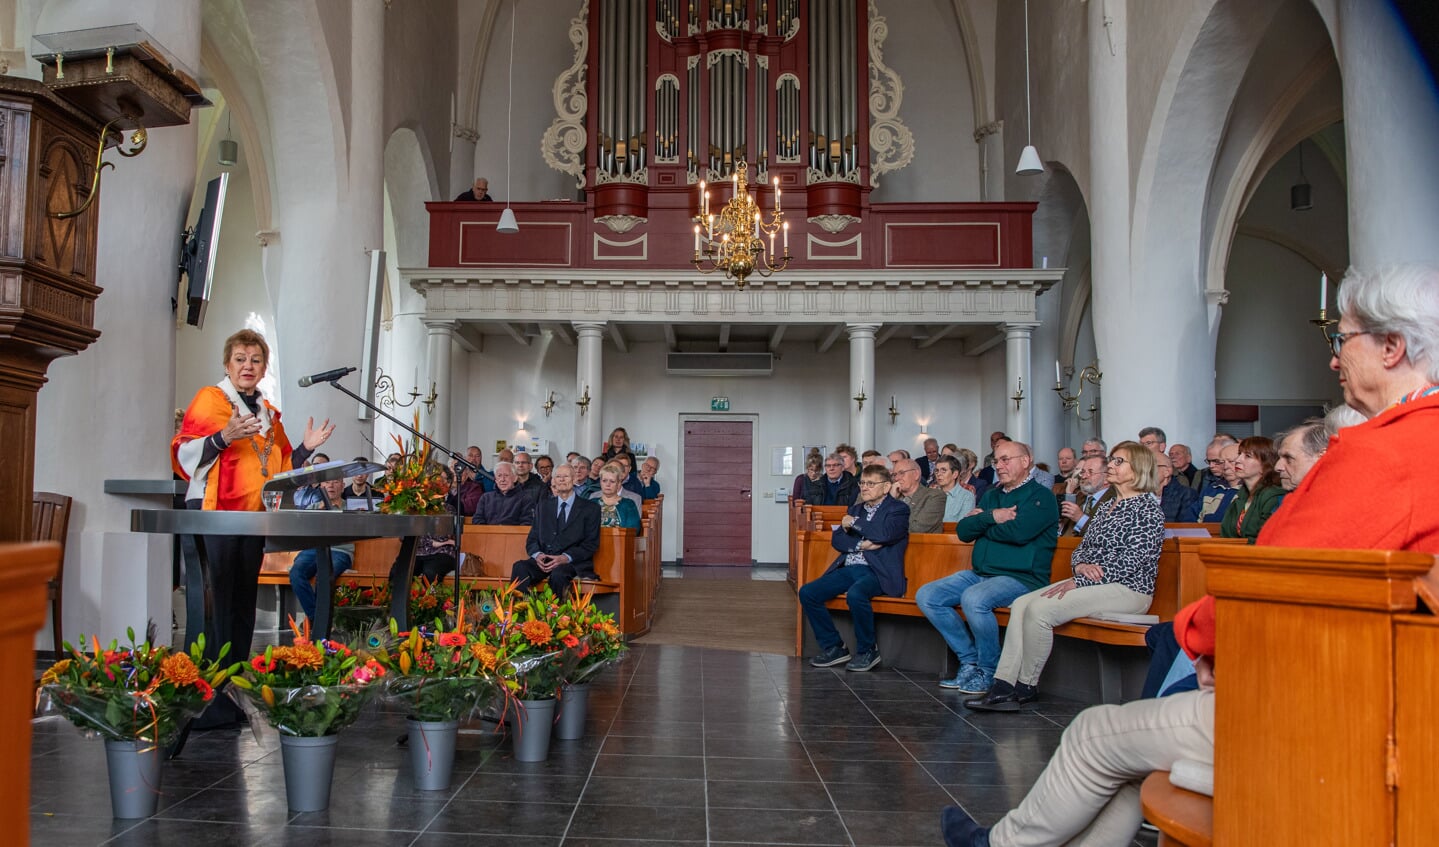 Burgemeester Marja van der Tas spreekt tot alle aanwezigen tijdens de lintjesregen in de Remigiuskerk in Hengelo. Foto: Achterhoekfoto.nl / Hans van Kooten